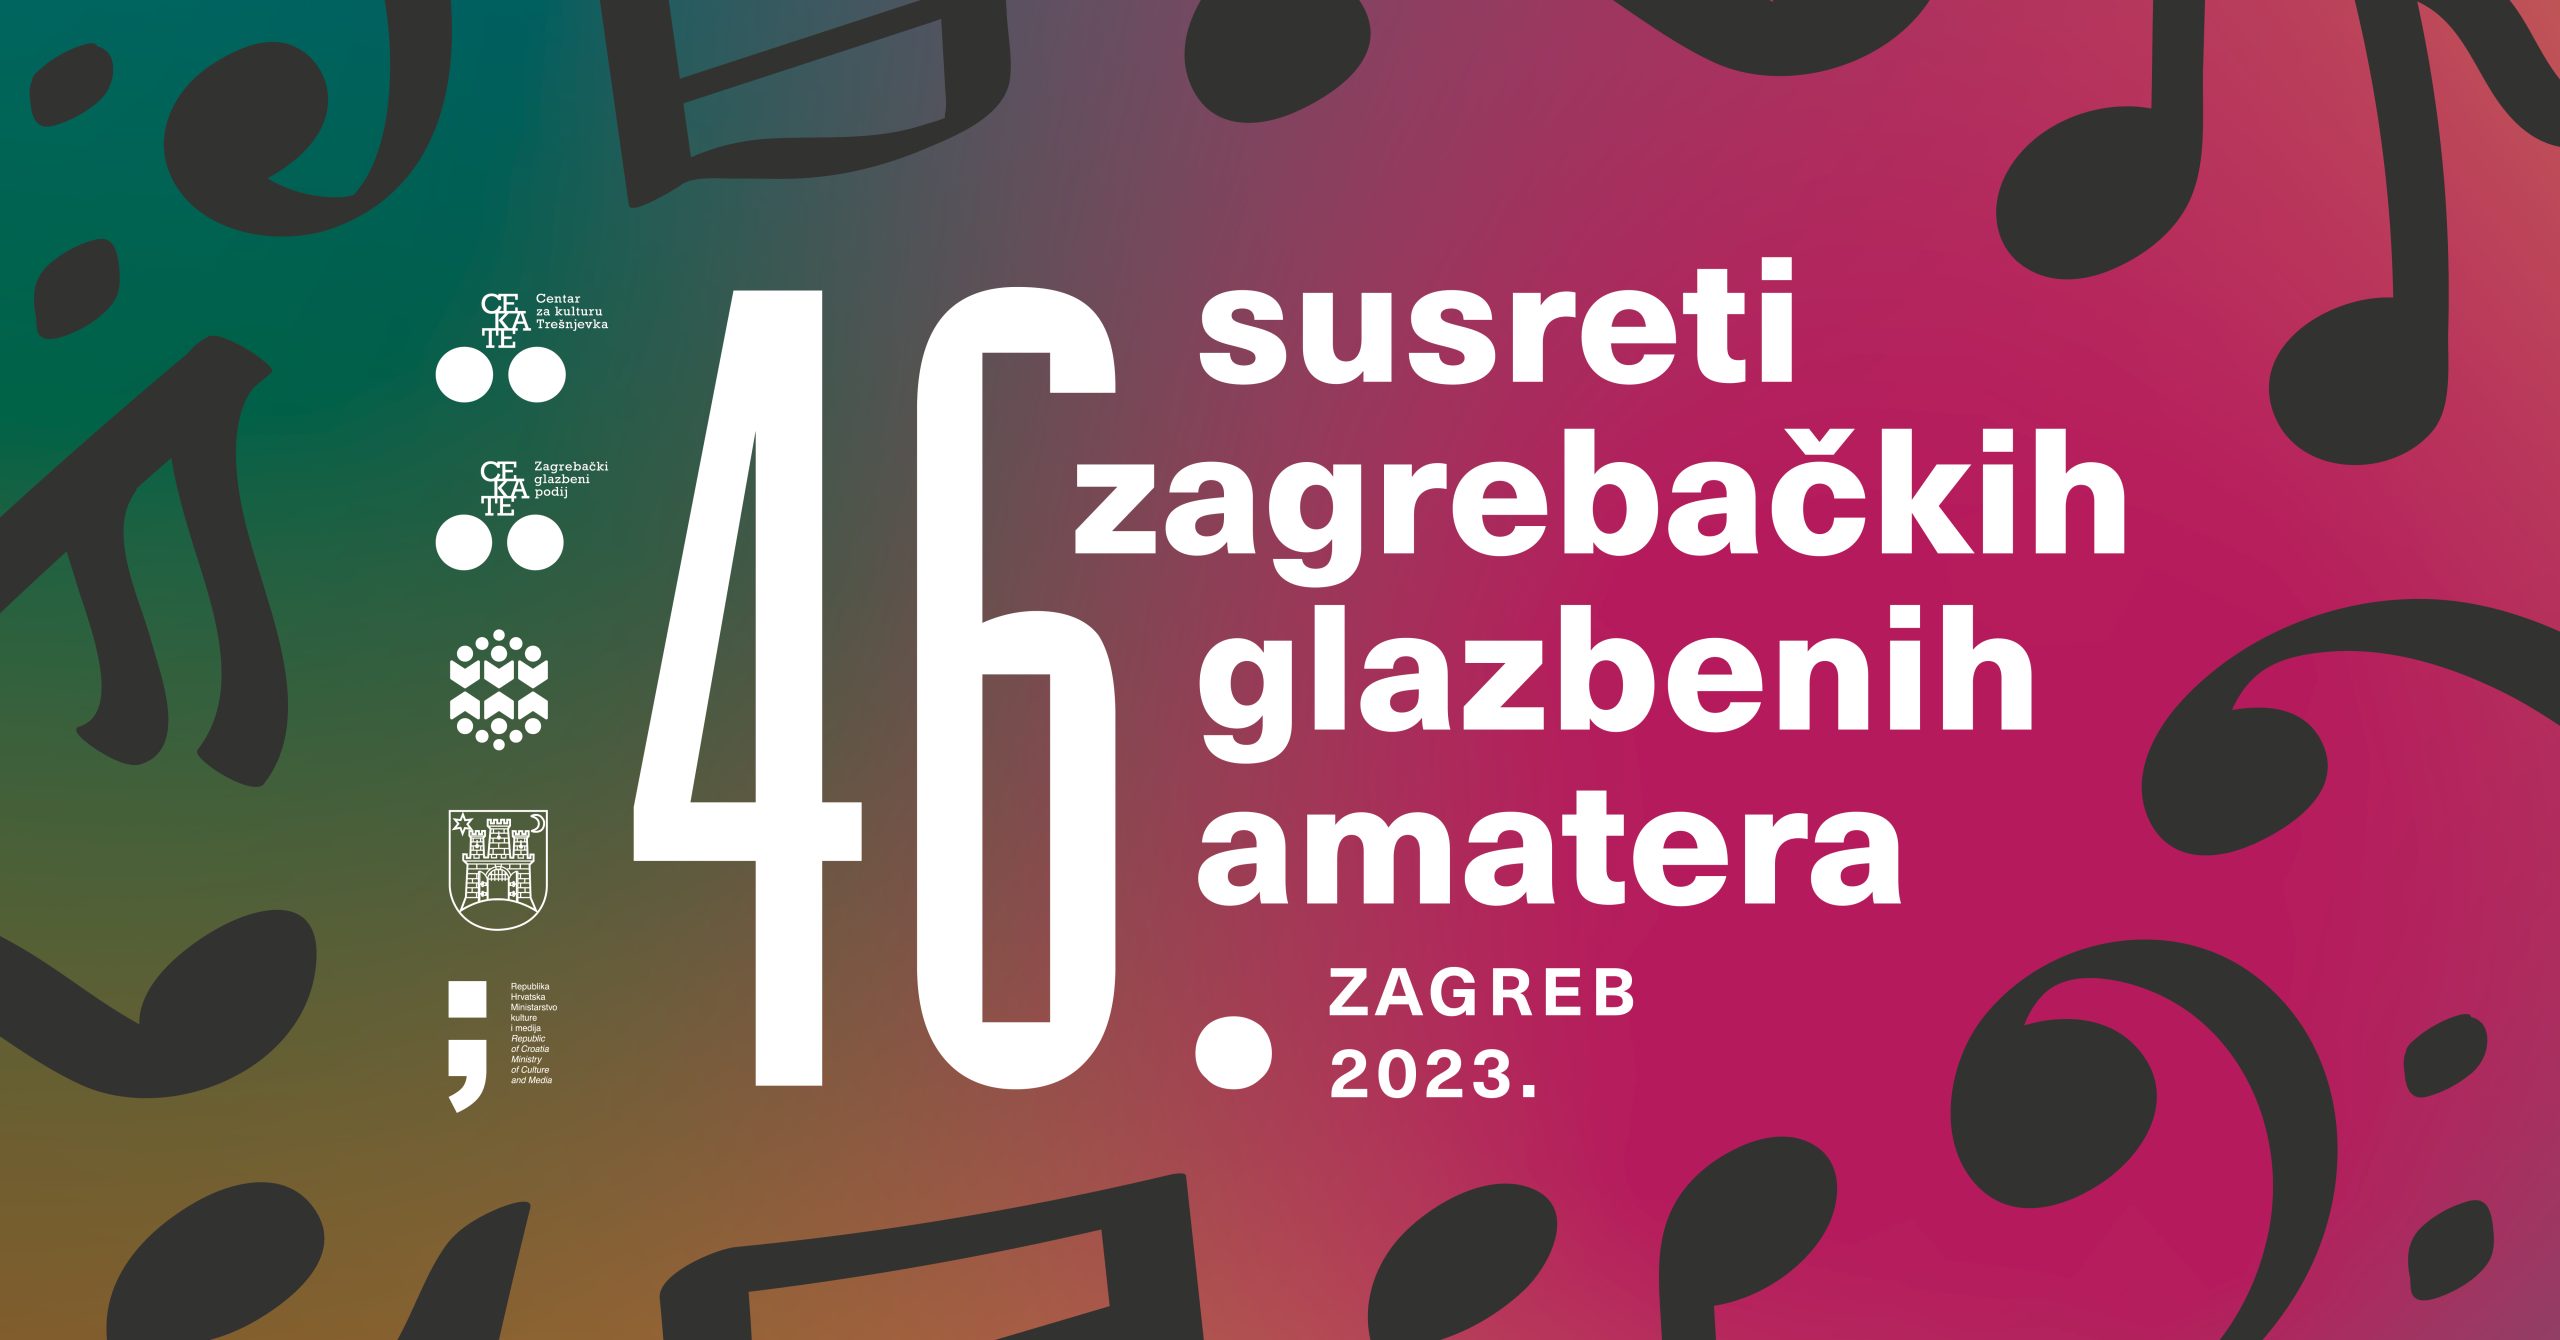 Treći koncert 46. susreta zagrebačkih glazbenih amatera